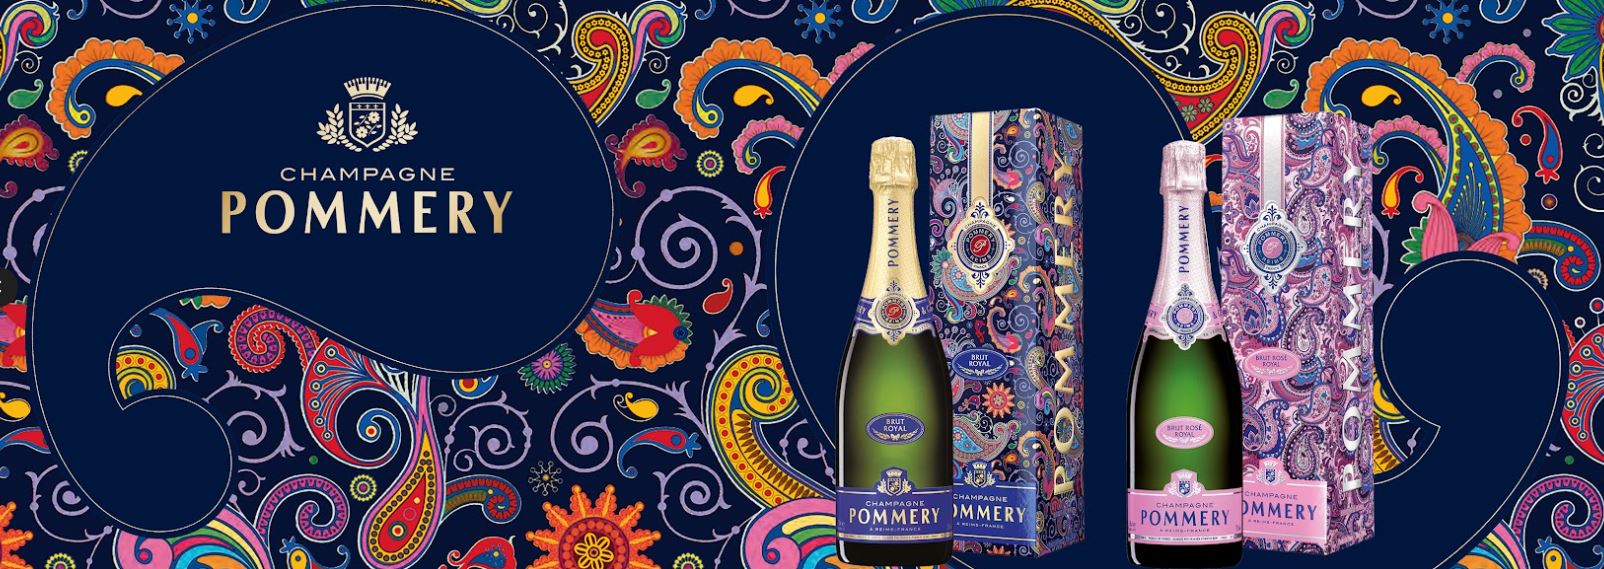 Champagne POMMERY: Kashmir im - - Paisley-Design Genussportal Gourmetwelten Das